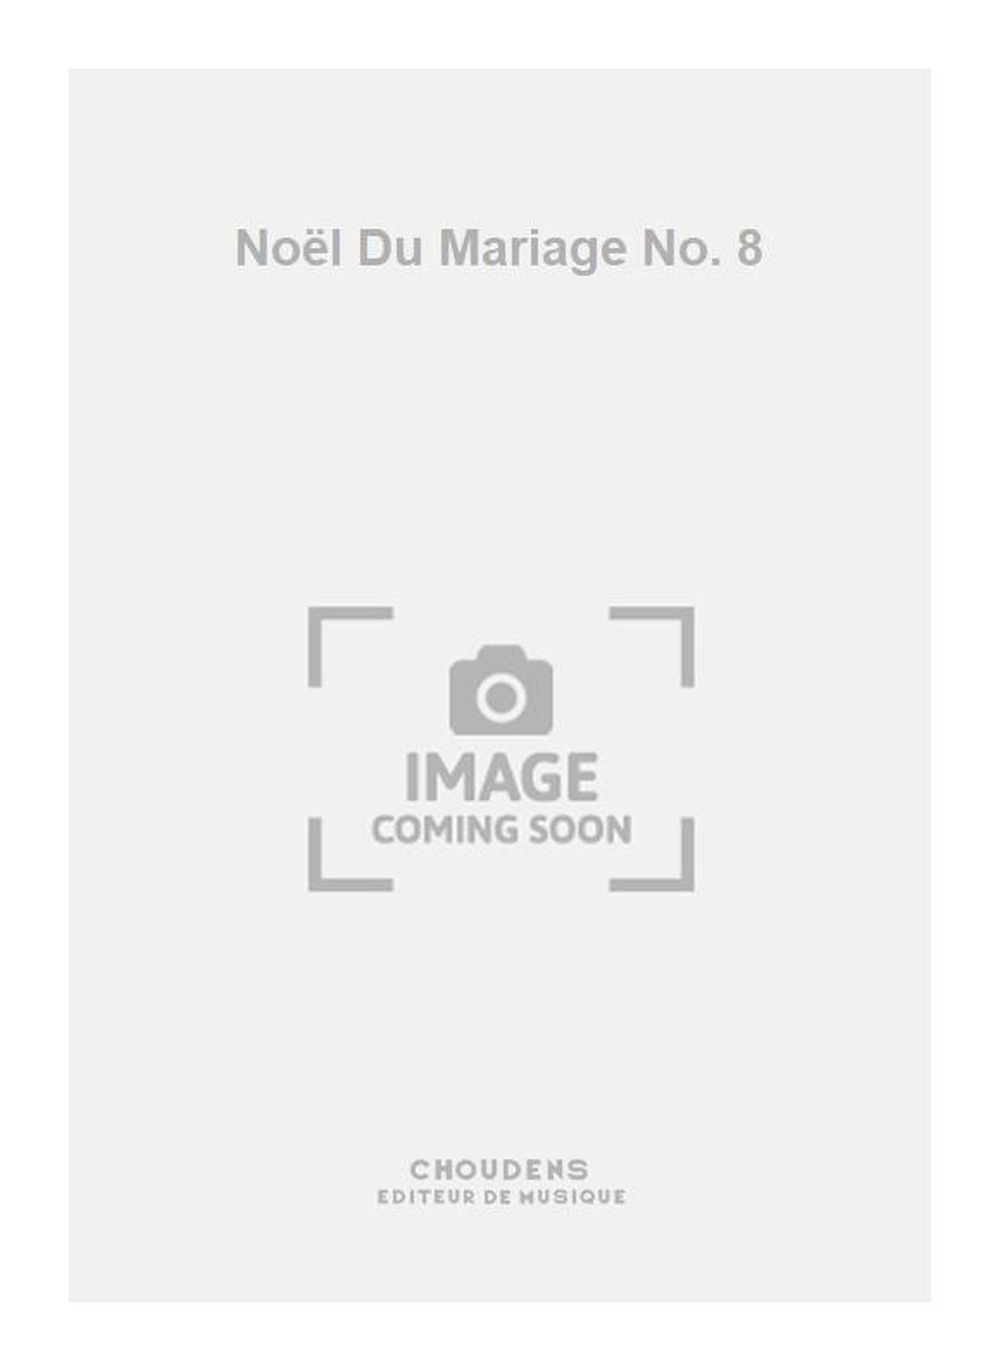 Nol Du Mariage No. 8